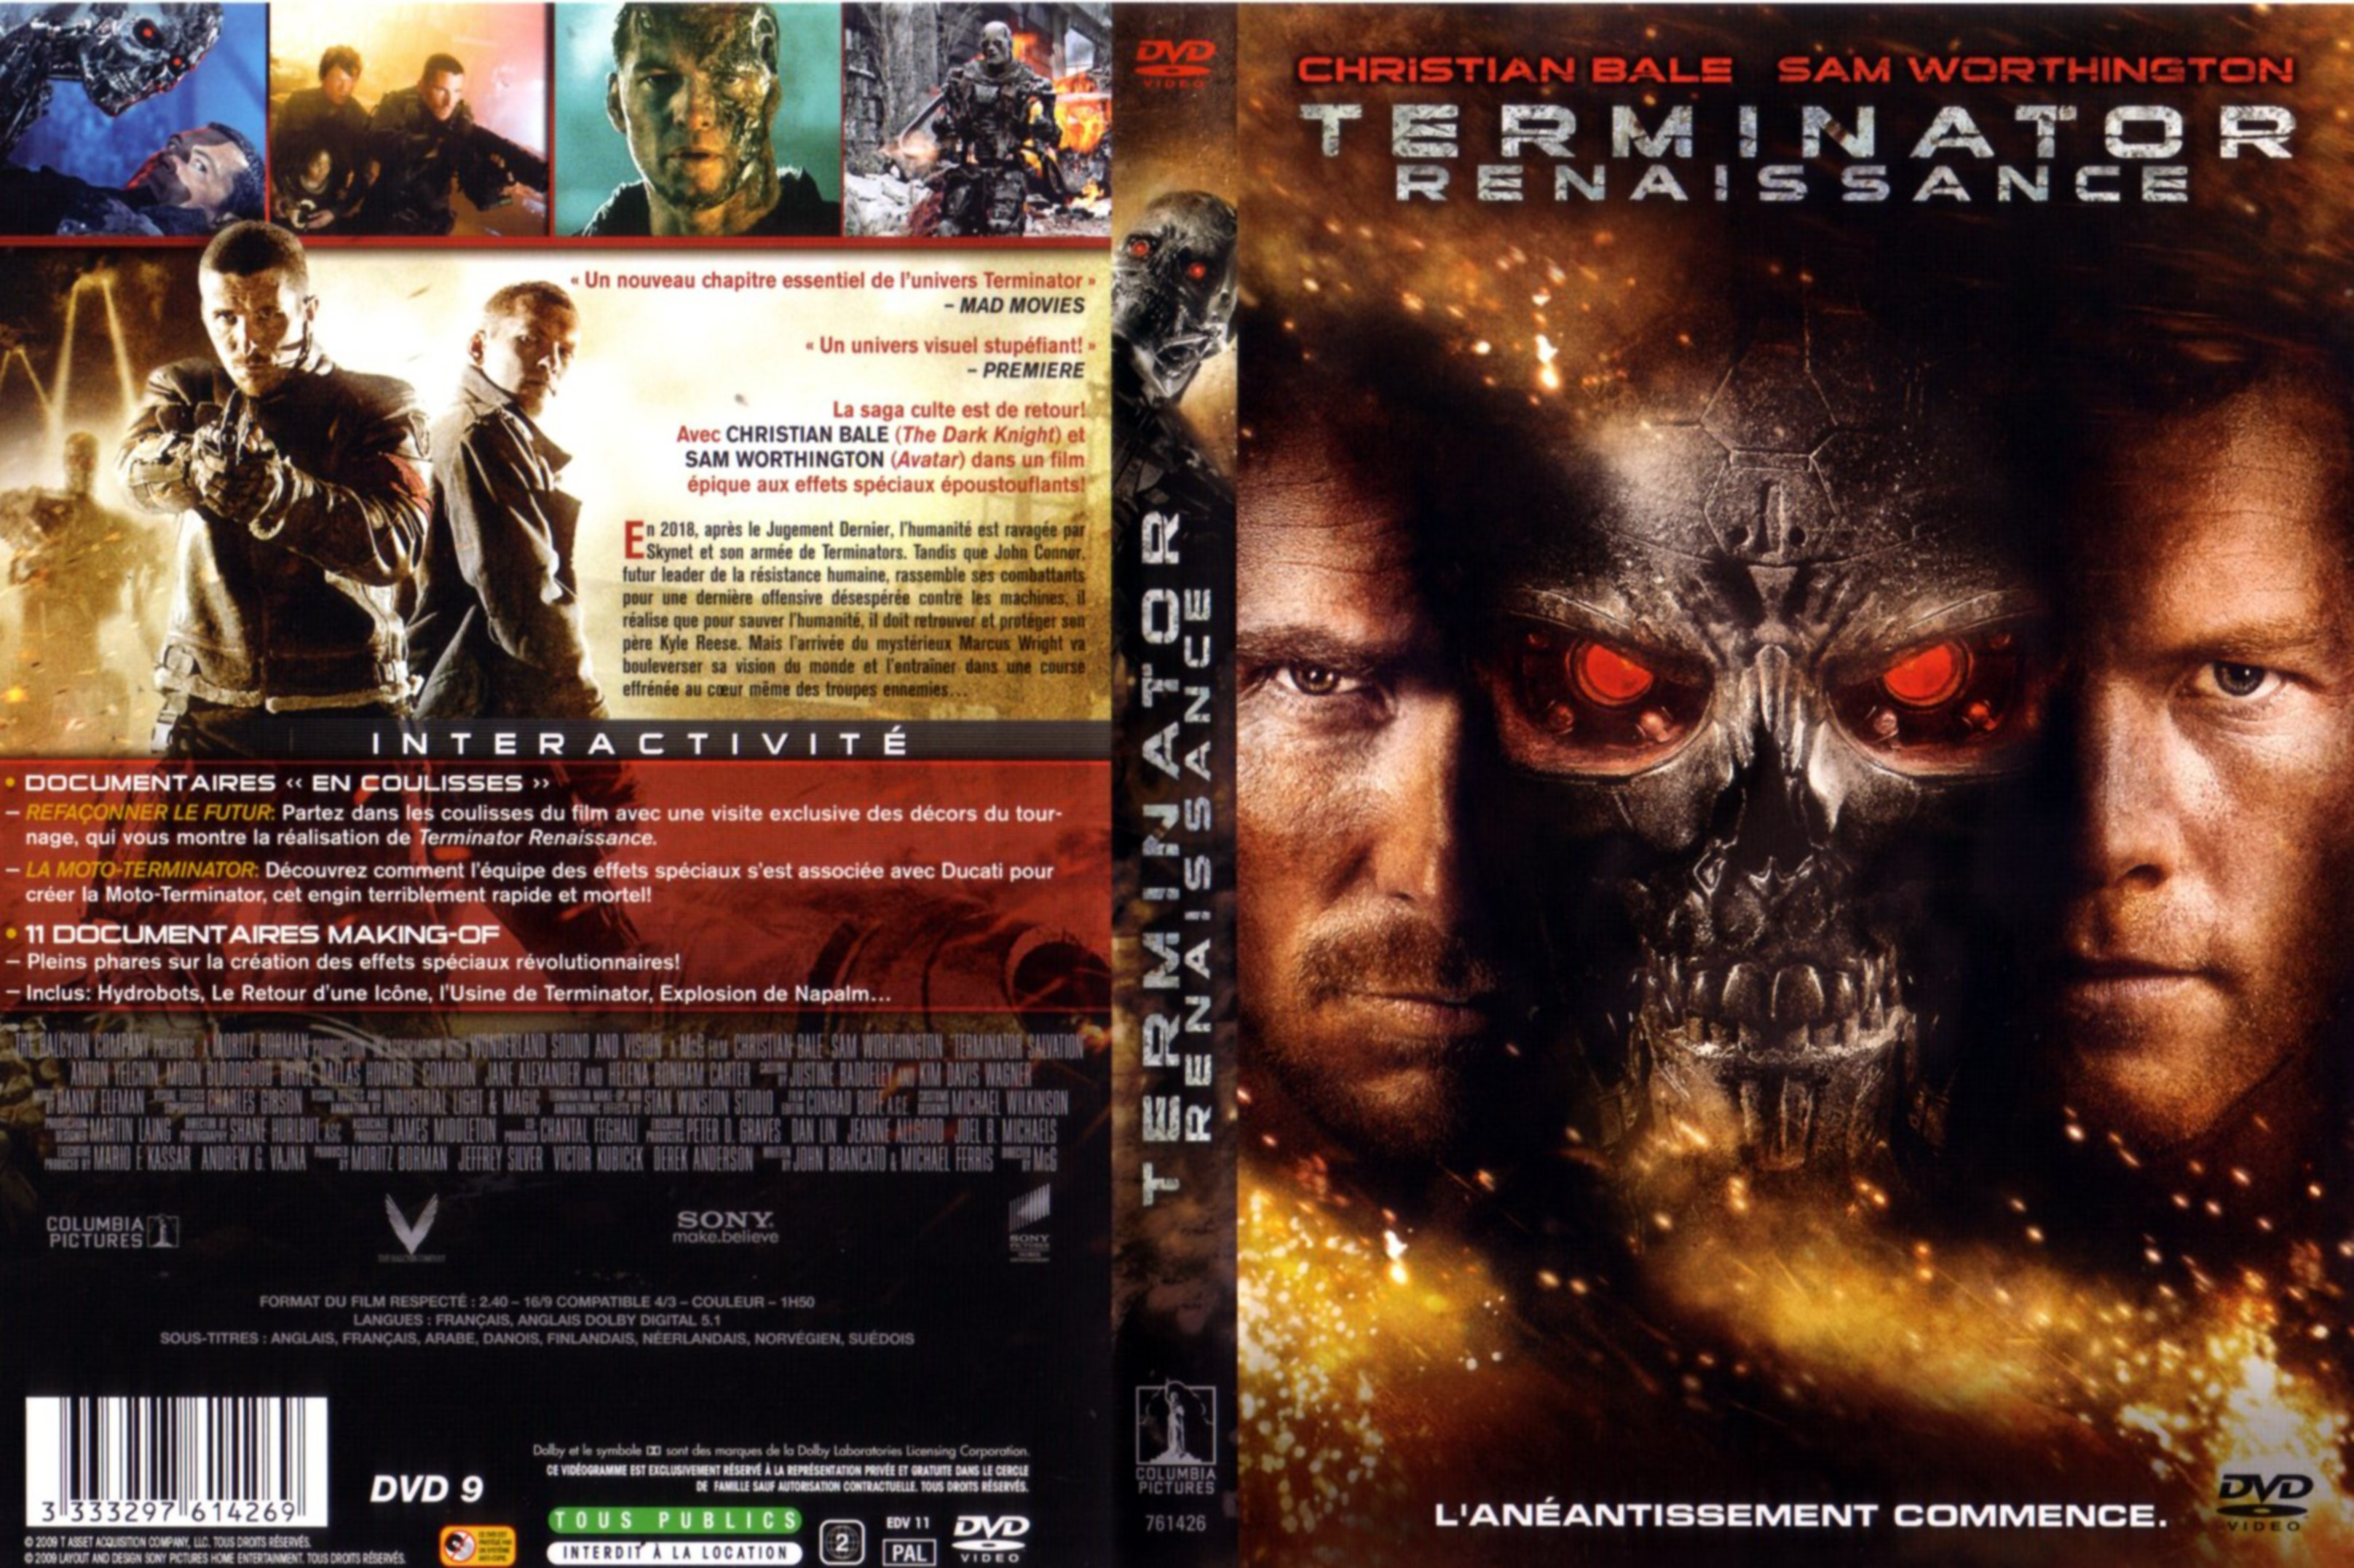 Jaquette Dvd De Terminator Renaissance Cinéma Passion